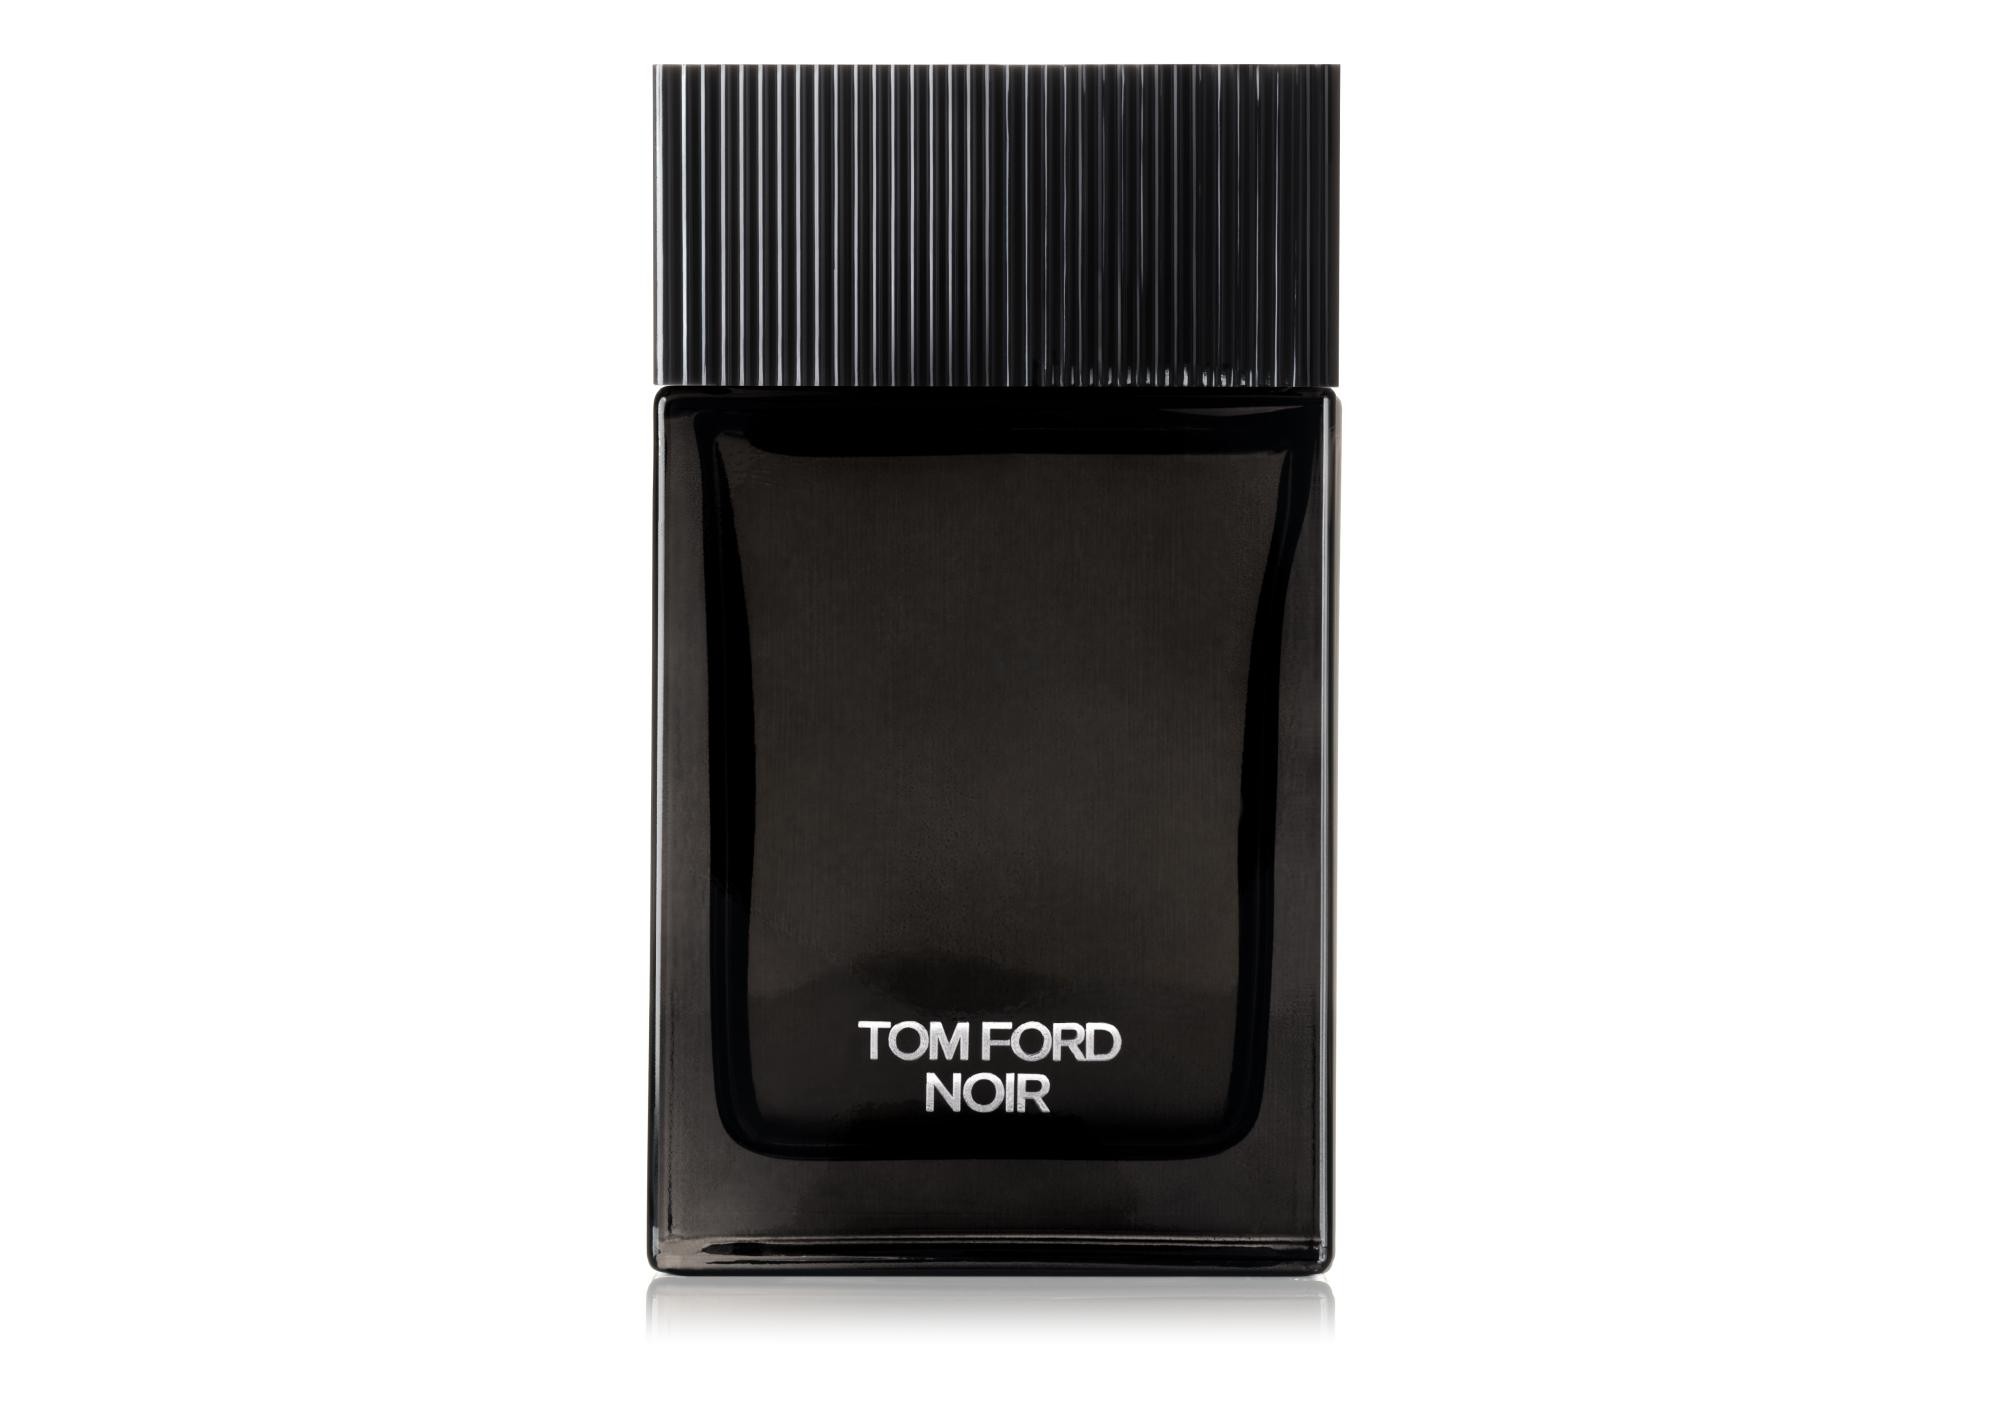 TOM FORD Noir eau de parfum 100ml